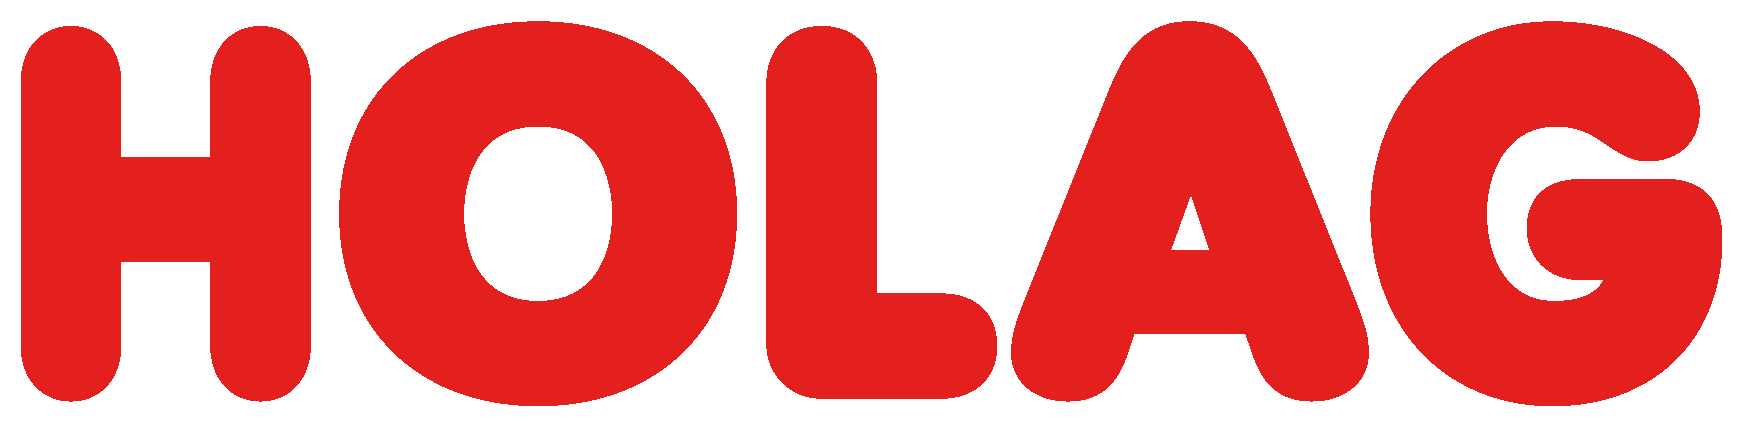 Holag AG Logo - Bautrocknung & Wasserschaden